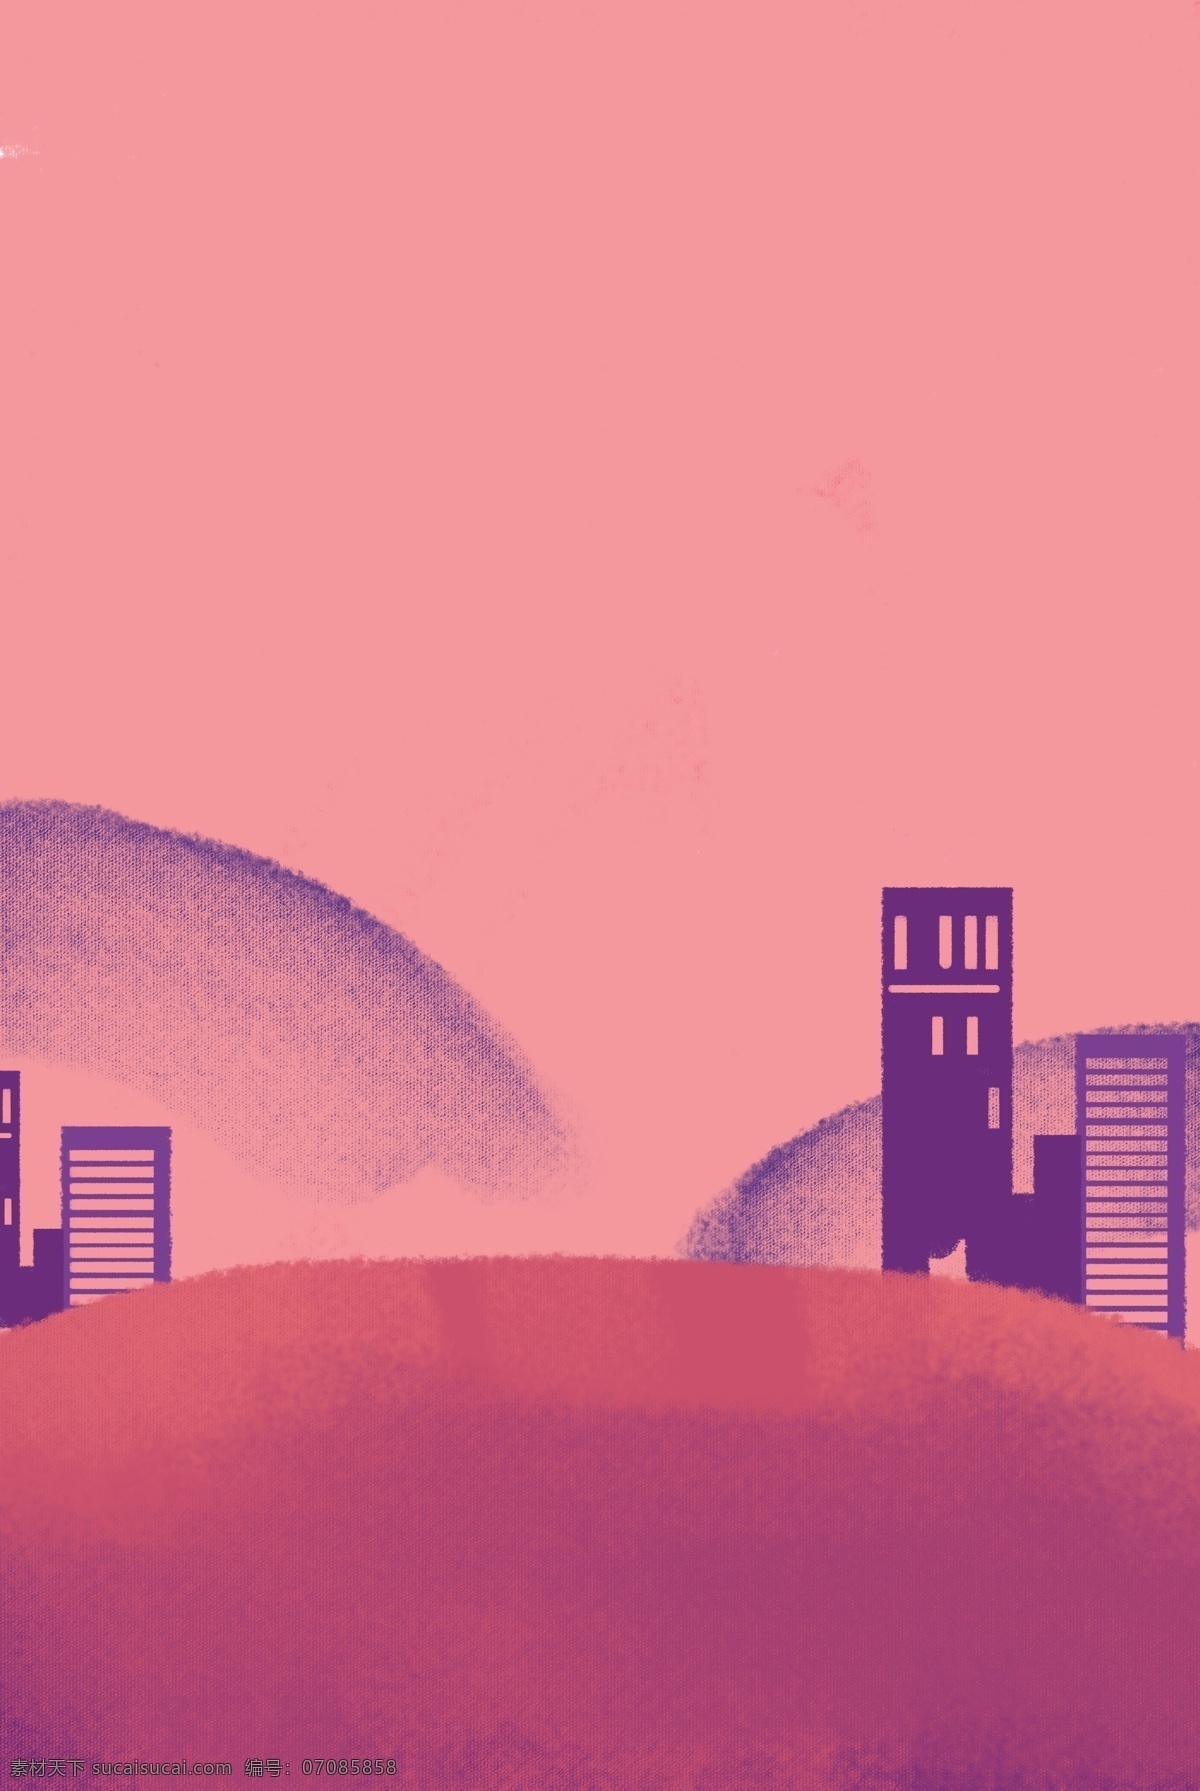 简约 卡通 粉 紫色 城市 剪影 背景 粉色 城市剪影 建筑 清新 大气